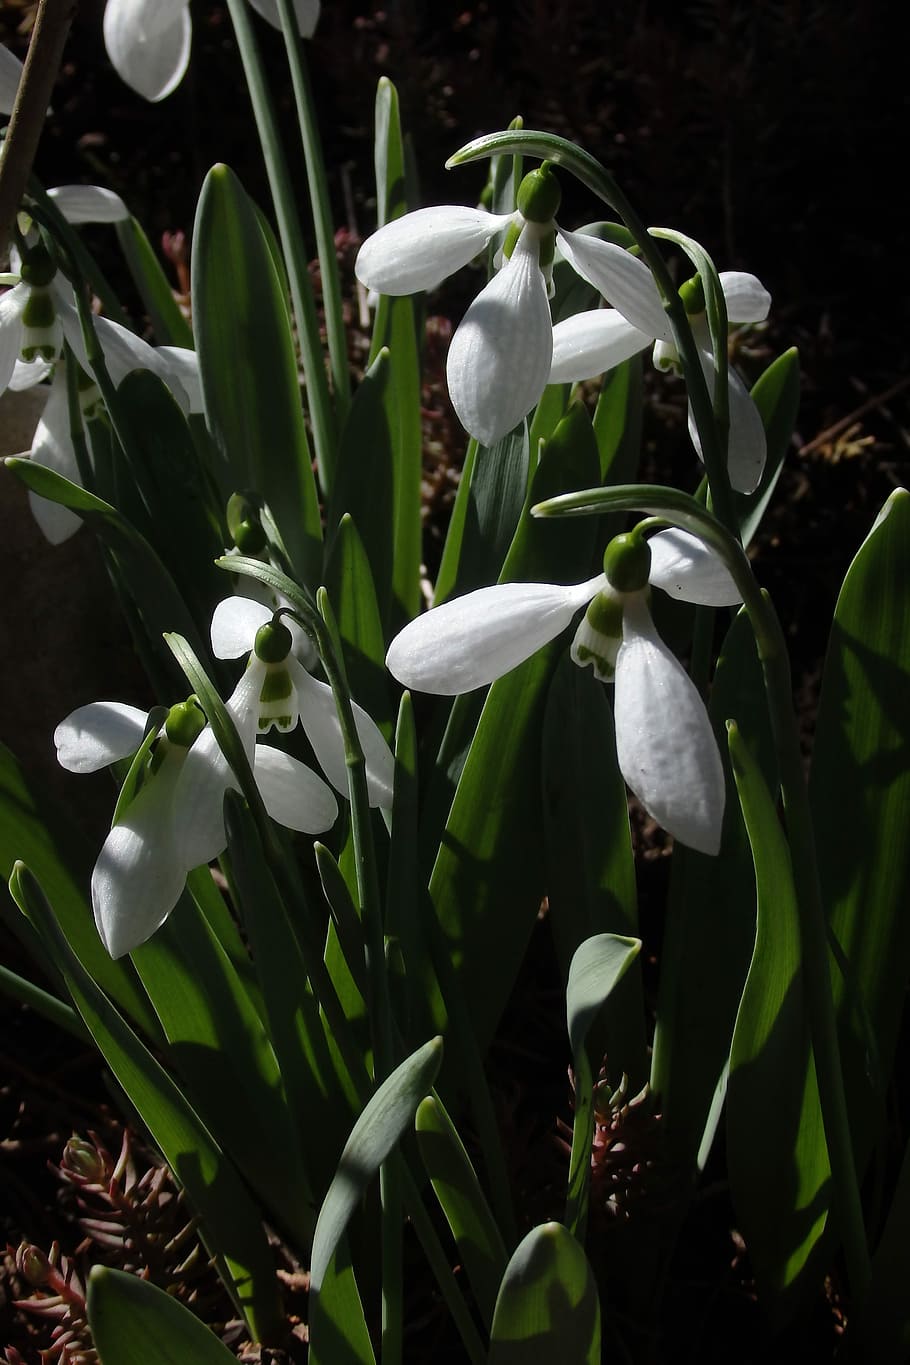 Snowdrop, primavera, naturaleza, flor, color blanco, crecimiento, pétalo, planta, belleza en la naturaleza, planta floreciendo